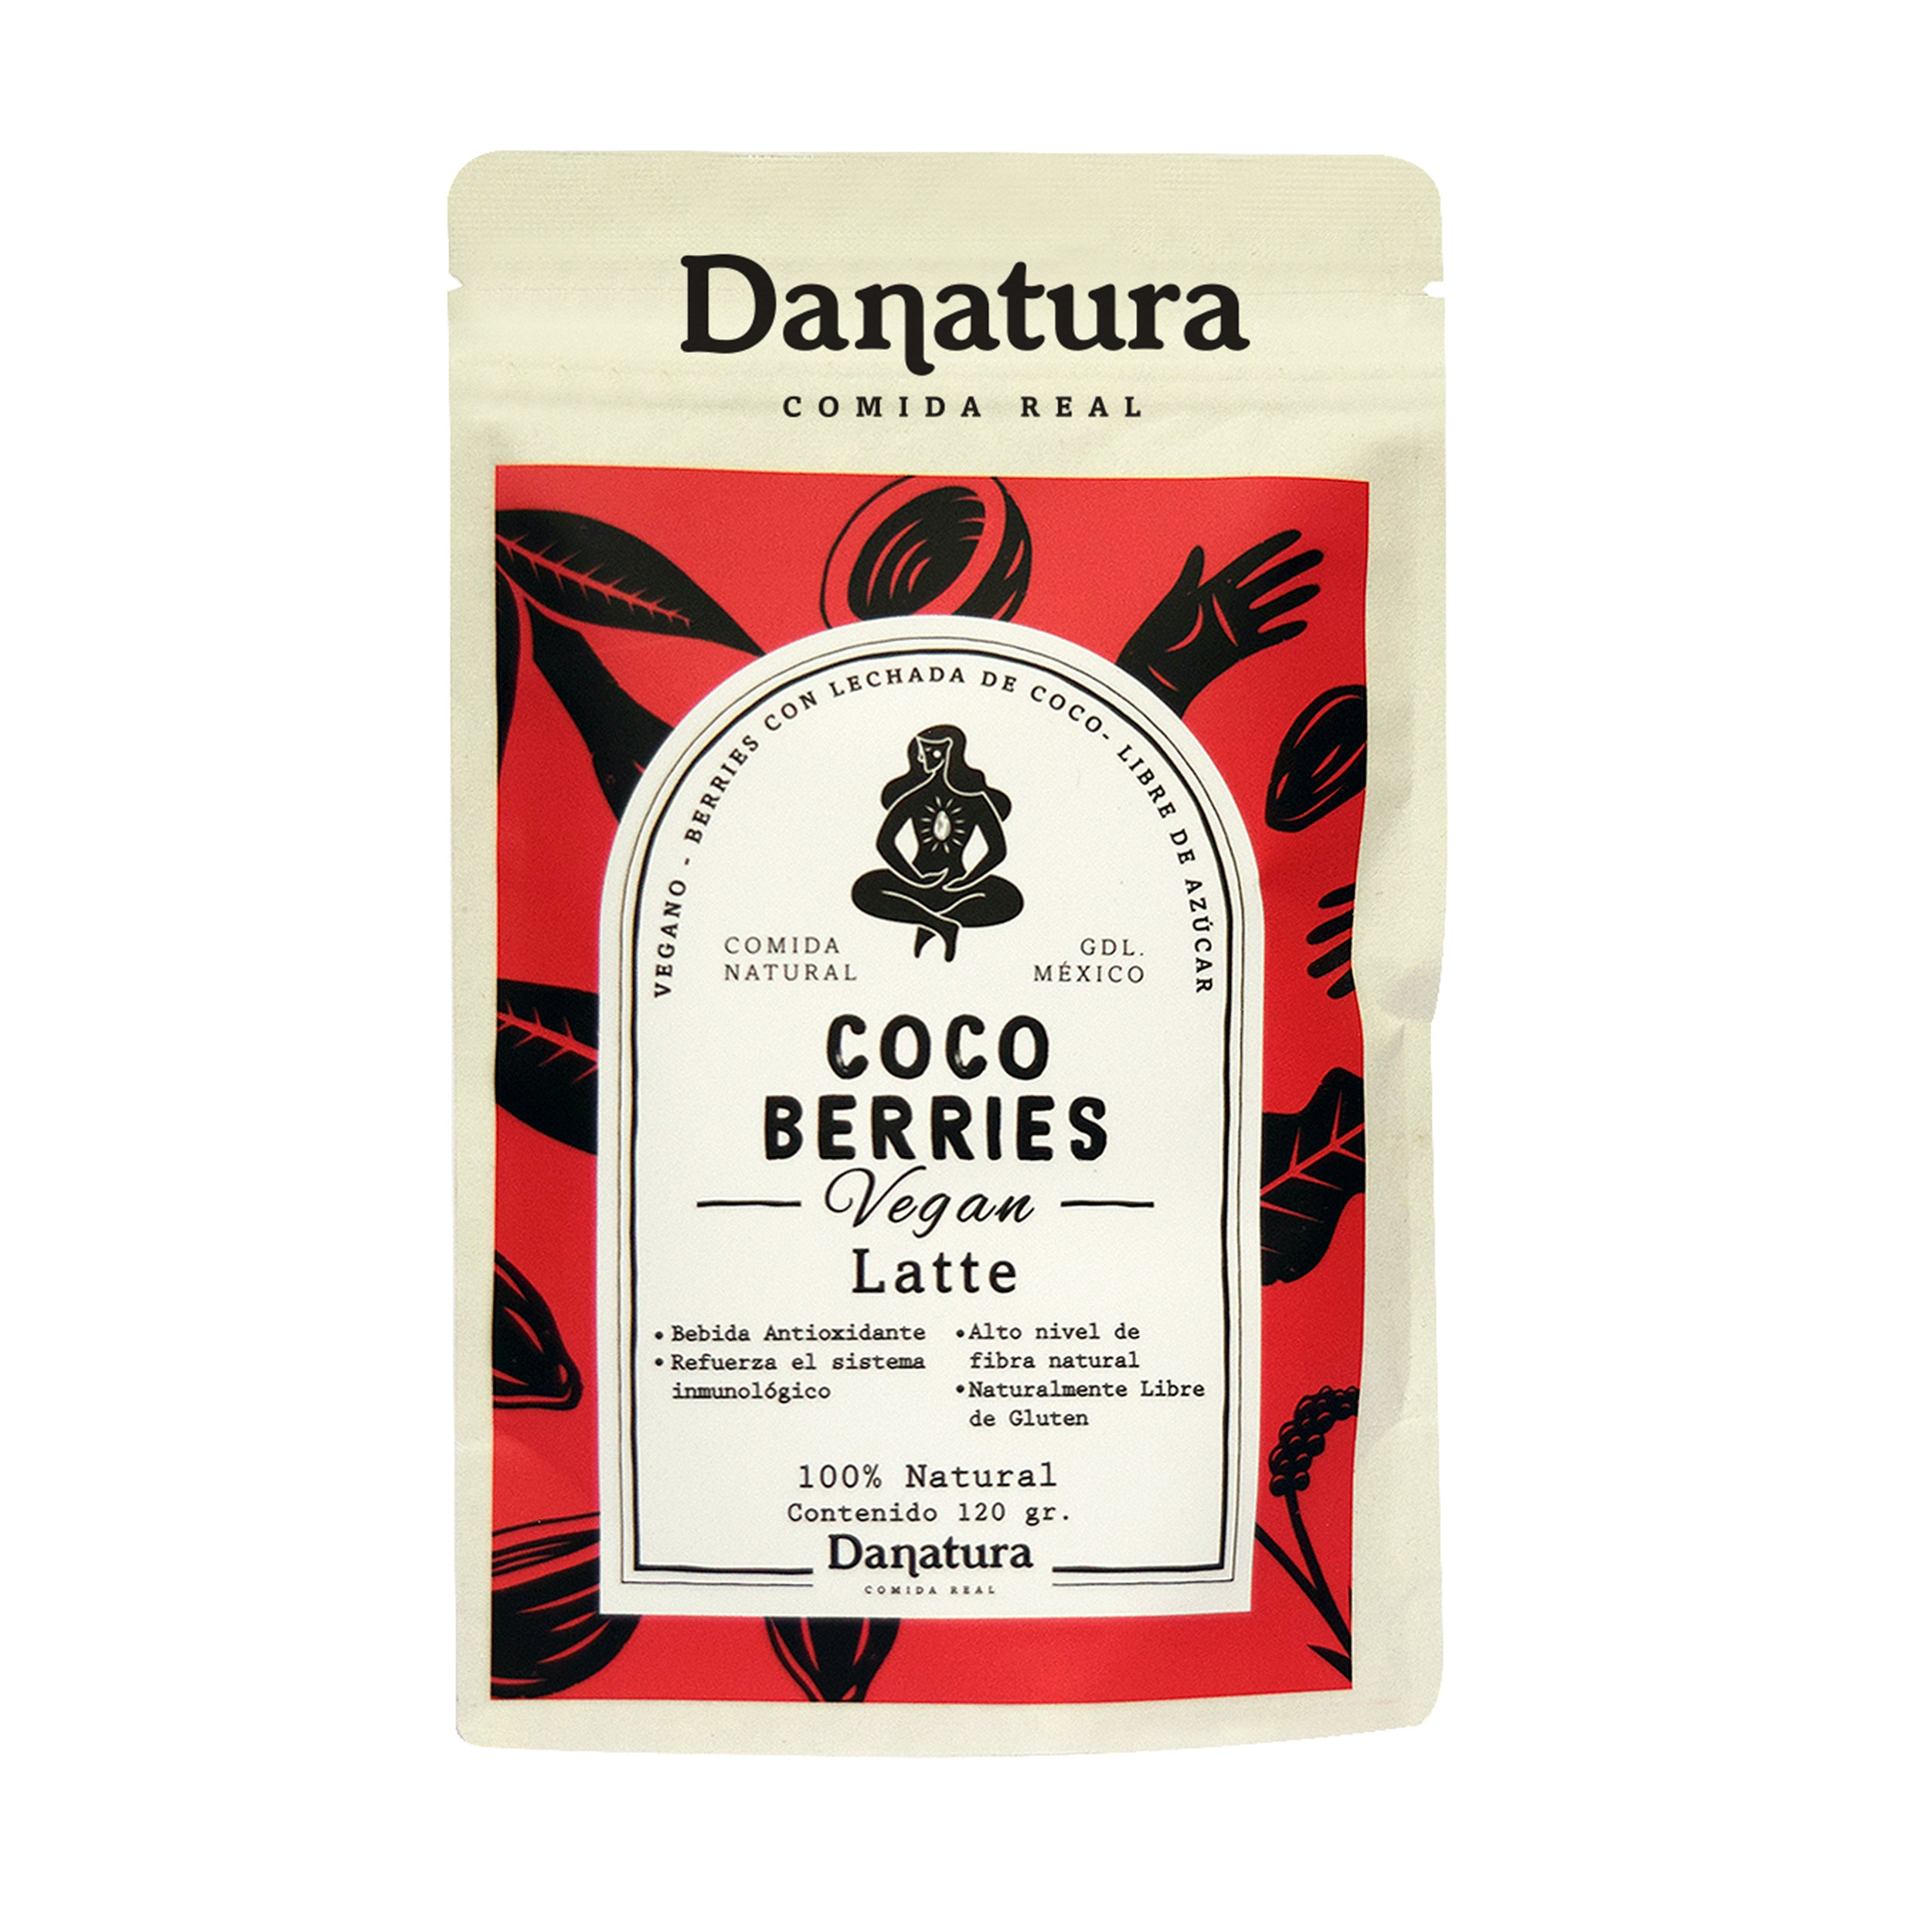 Danatura -Coco berries vegan latte